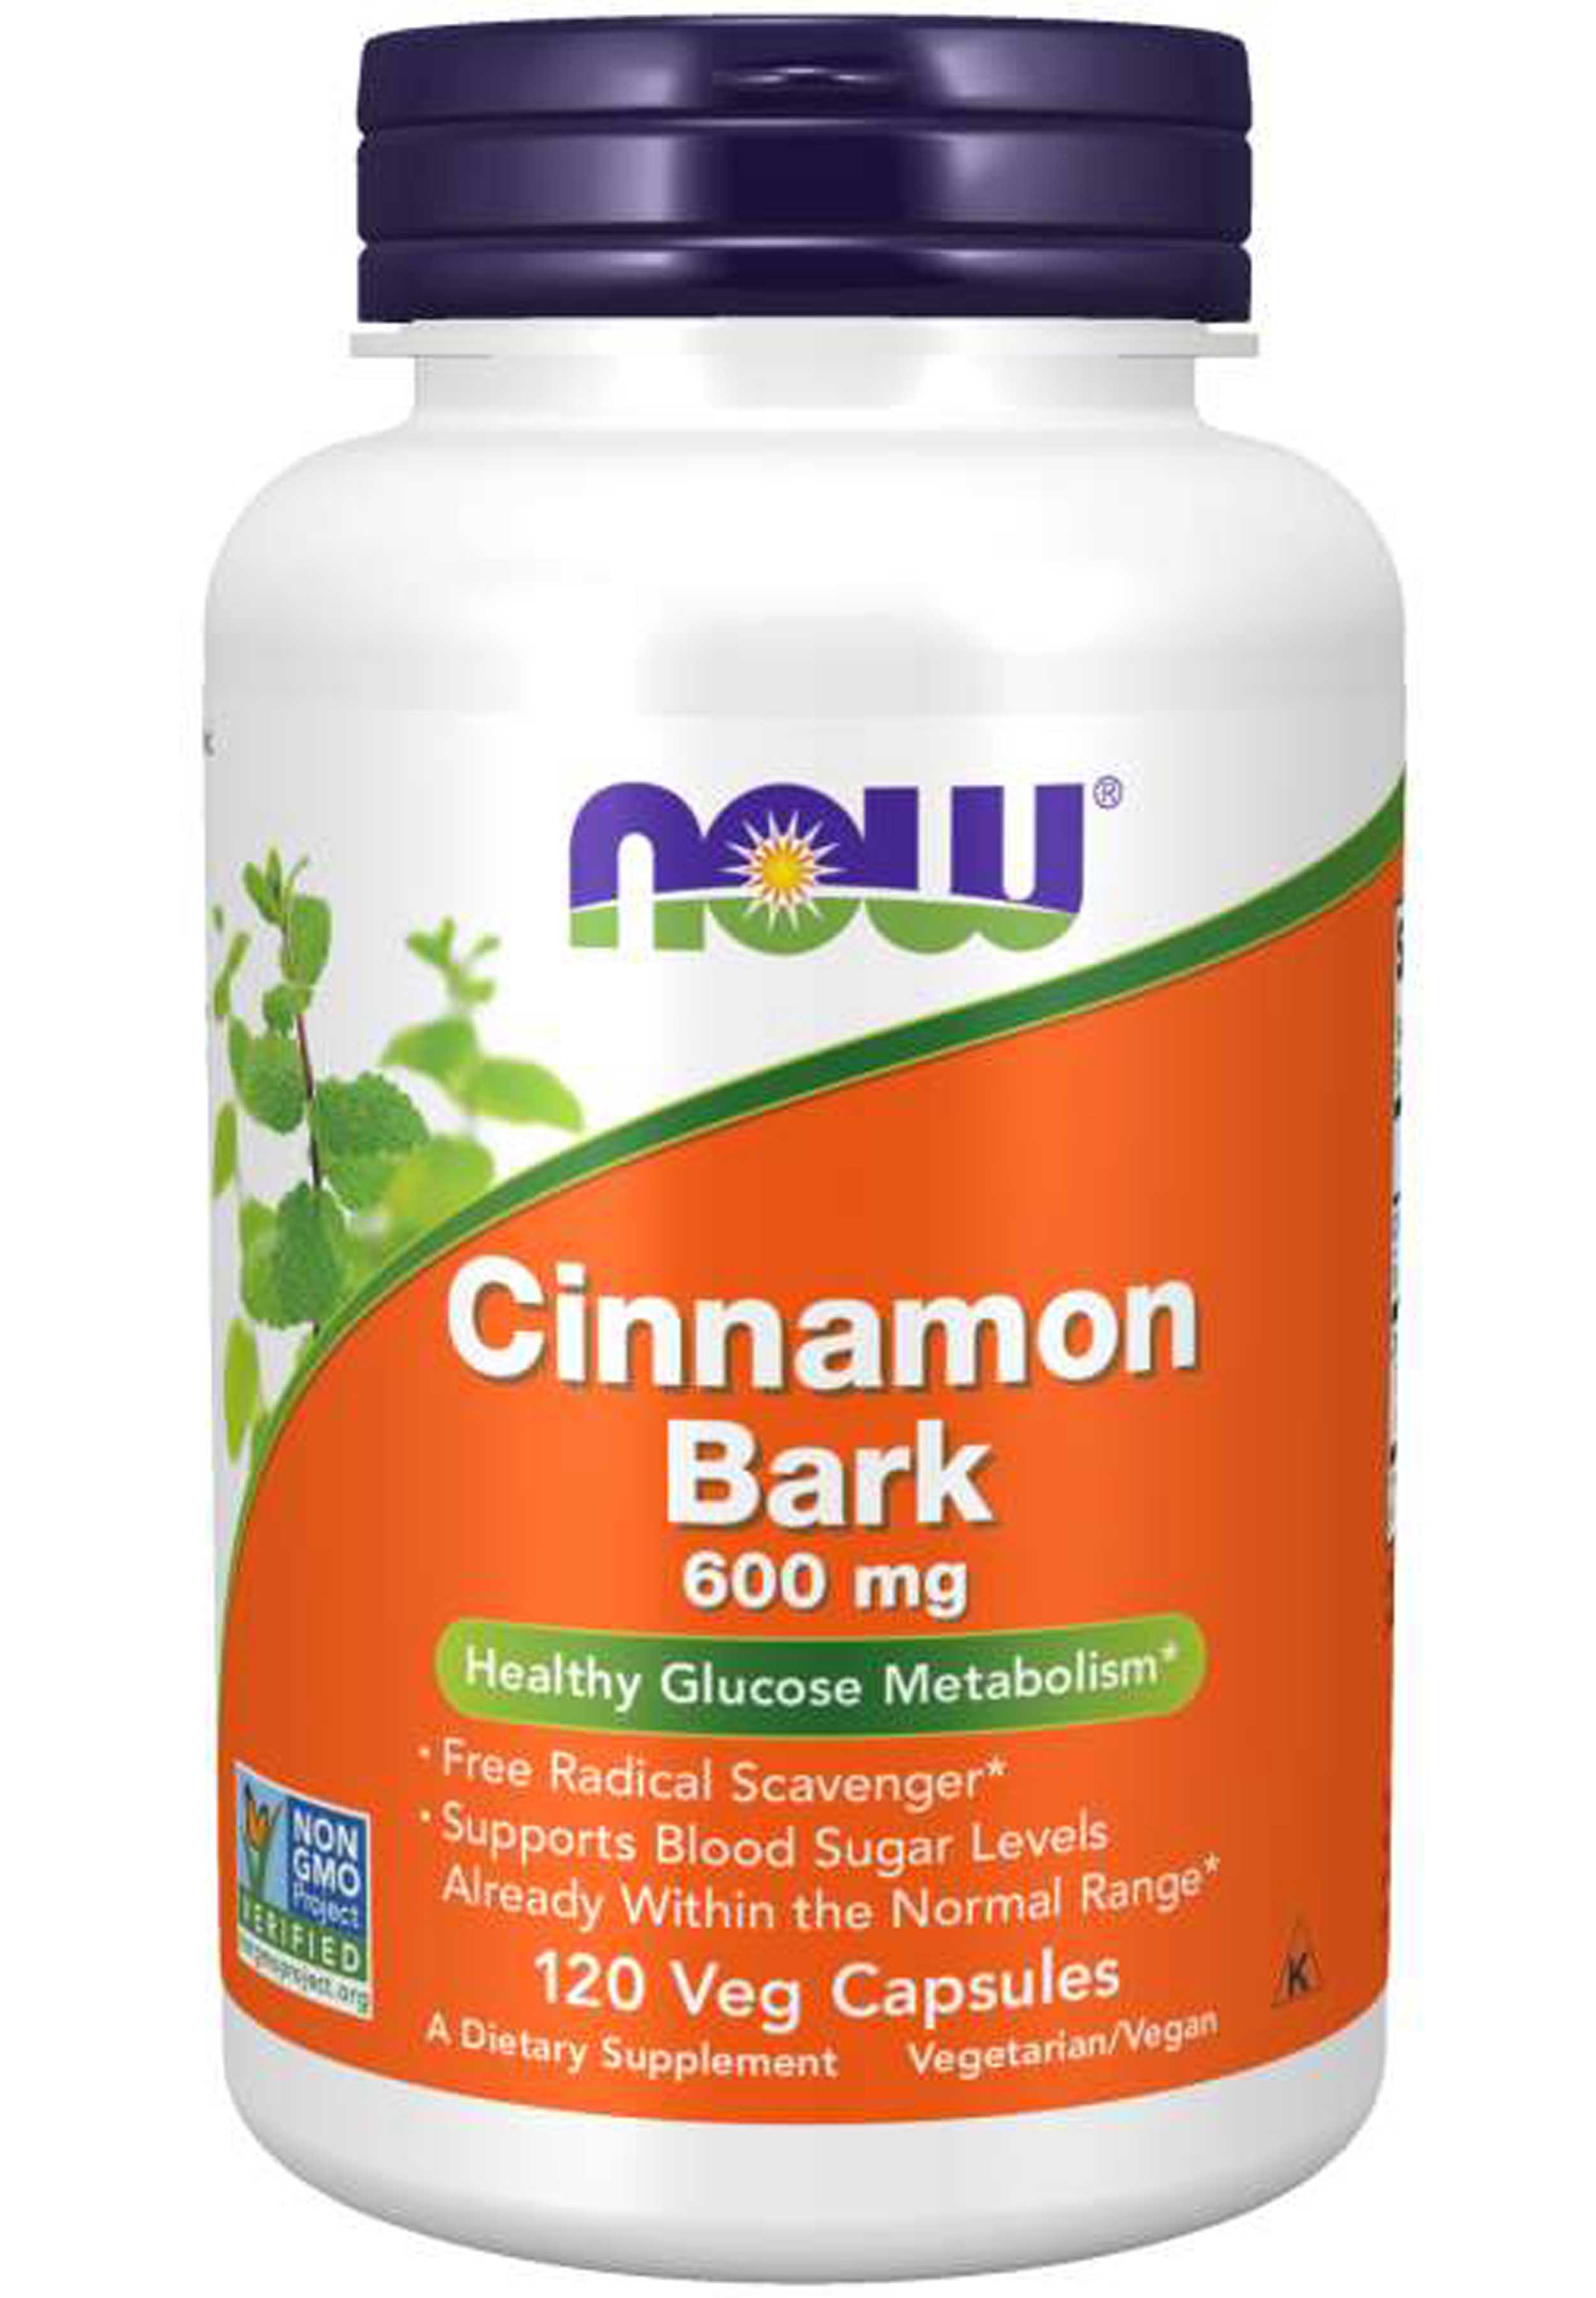 NOW Cinnamon Bark 600 mg